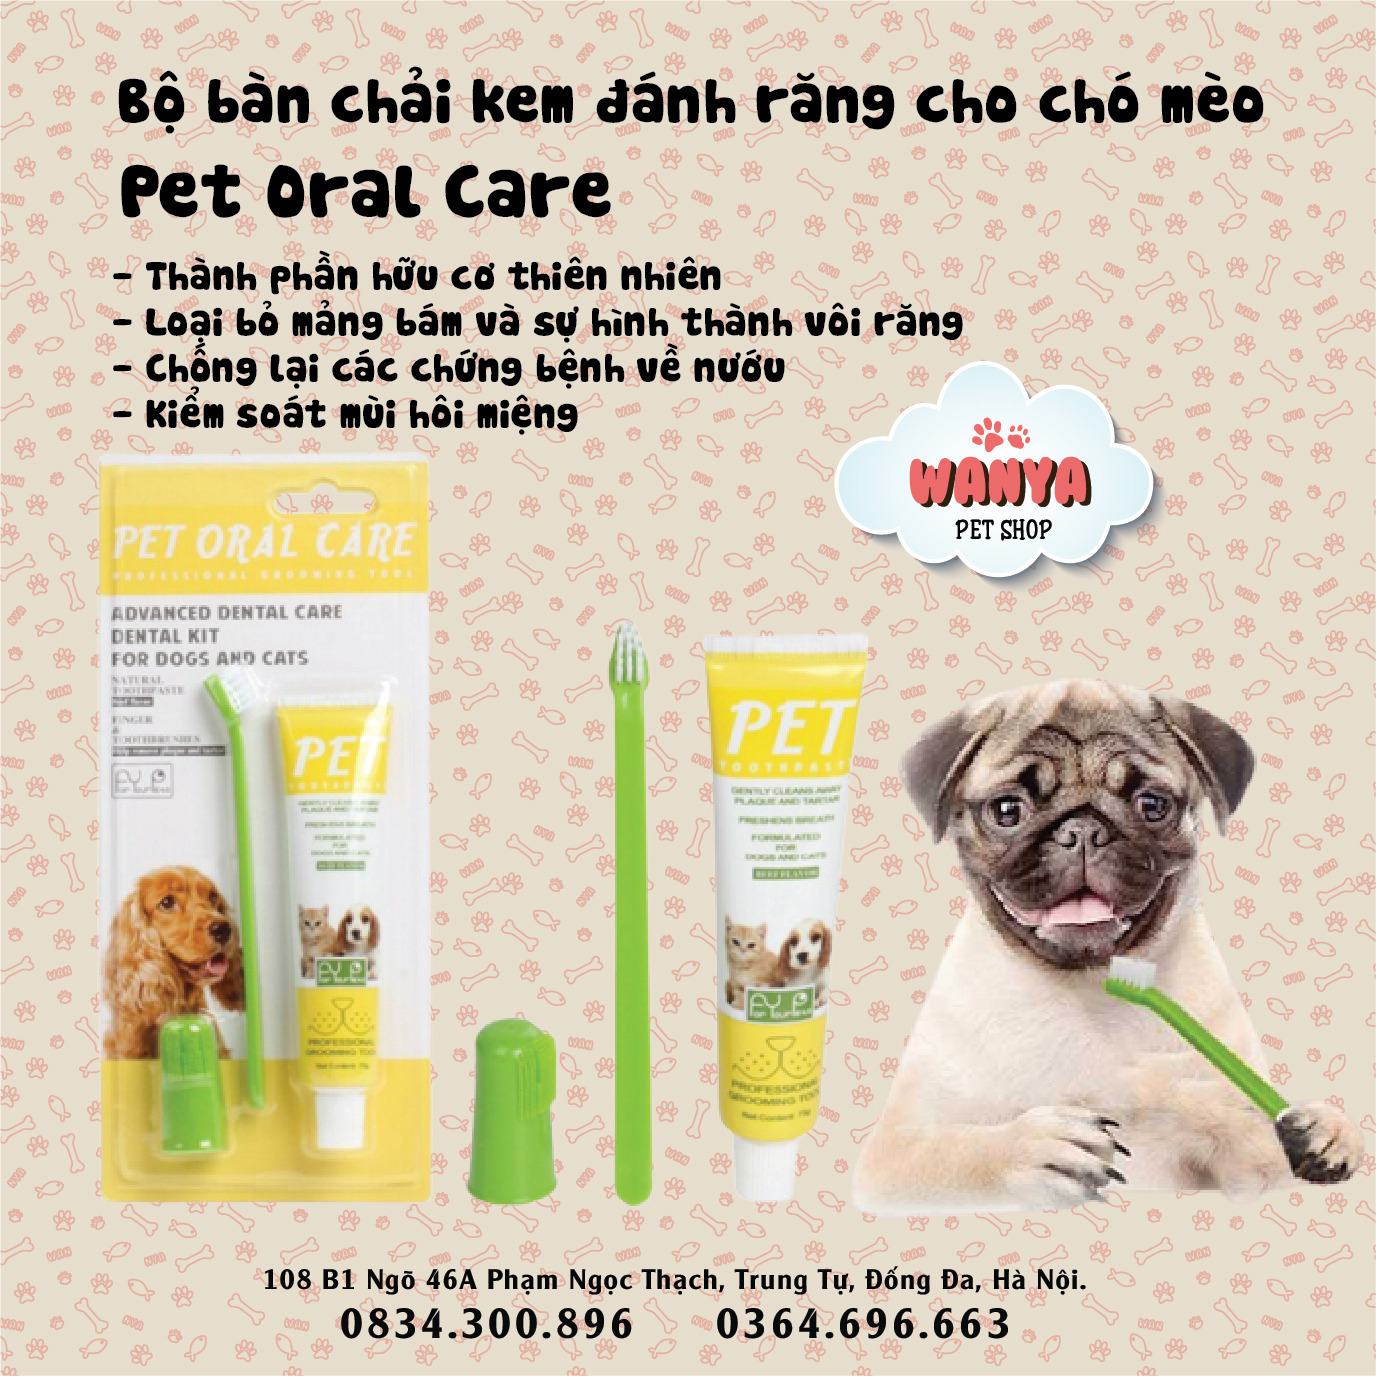 Bộ bàn chải + kem đánh răng cho chó mèo Pet Oral Care